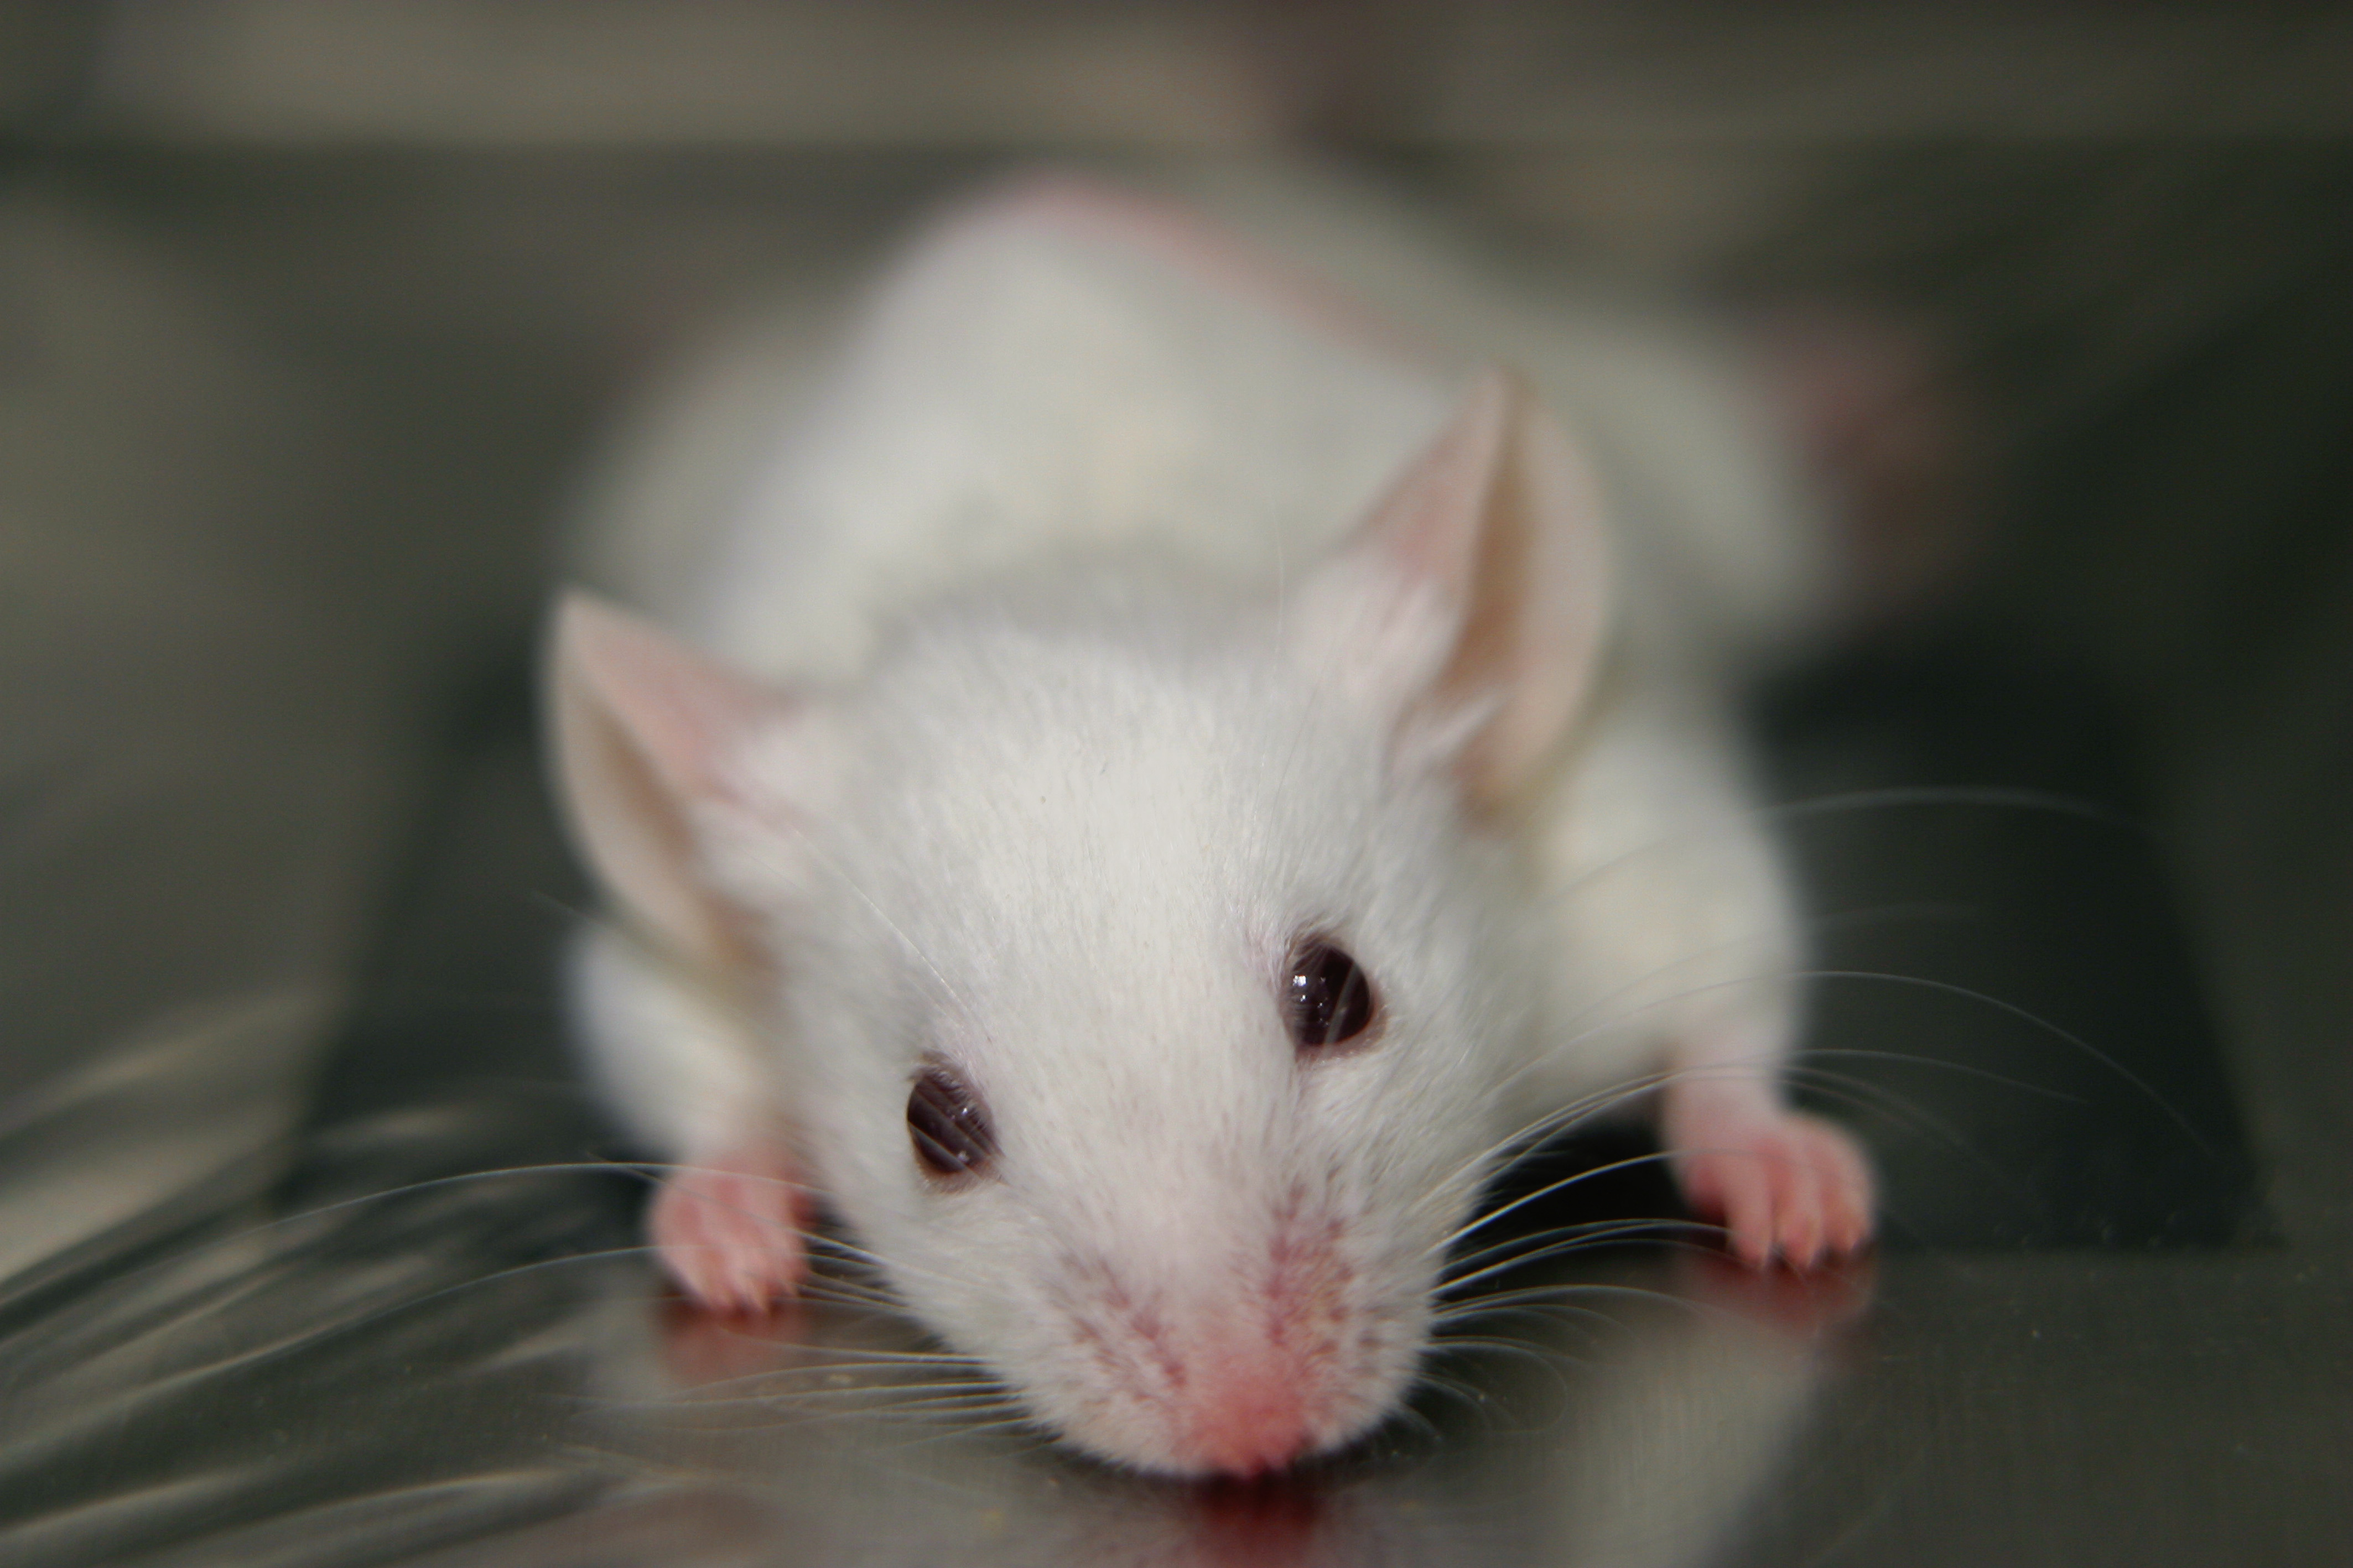 Az USA-ban leállnak az egyéb kutatások a koronavírus miatt, ezrével ölik meg a kísérleti egereket